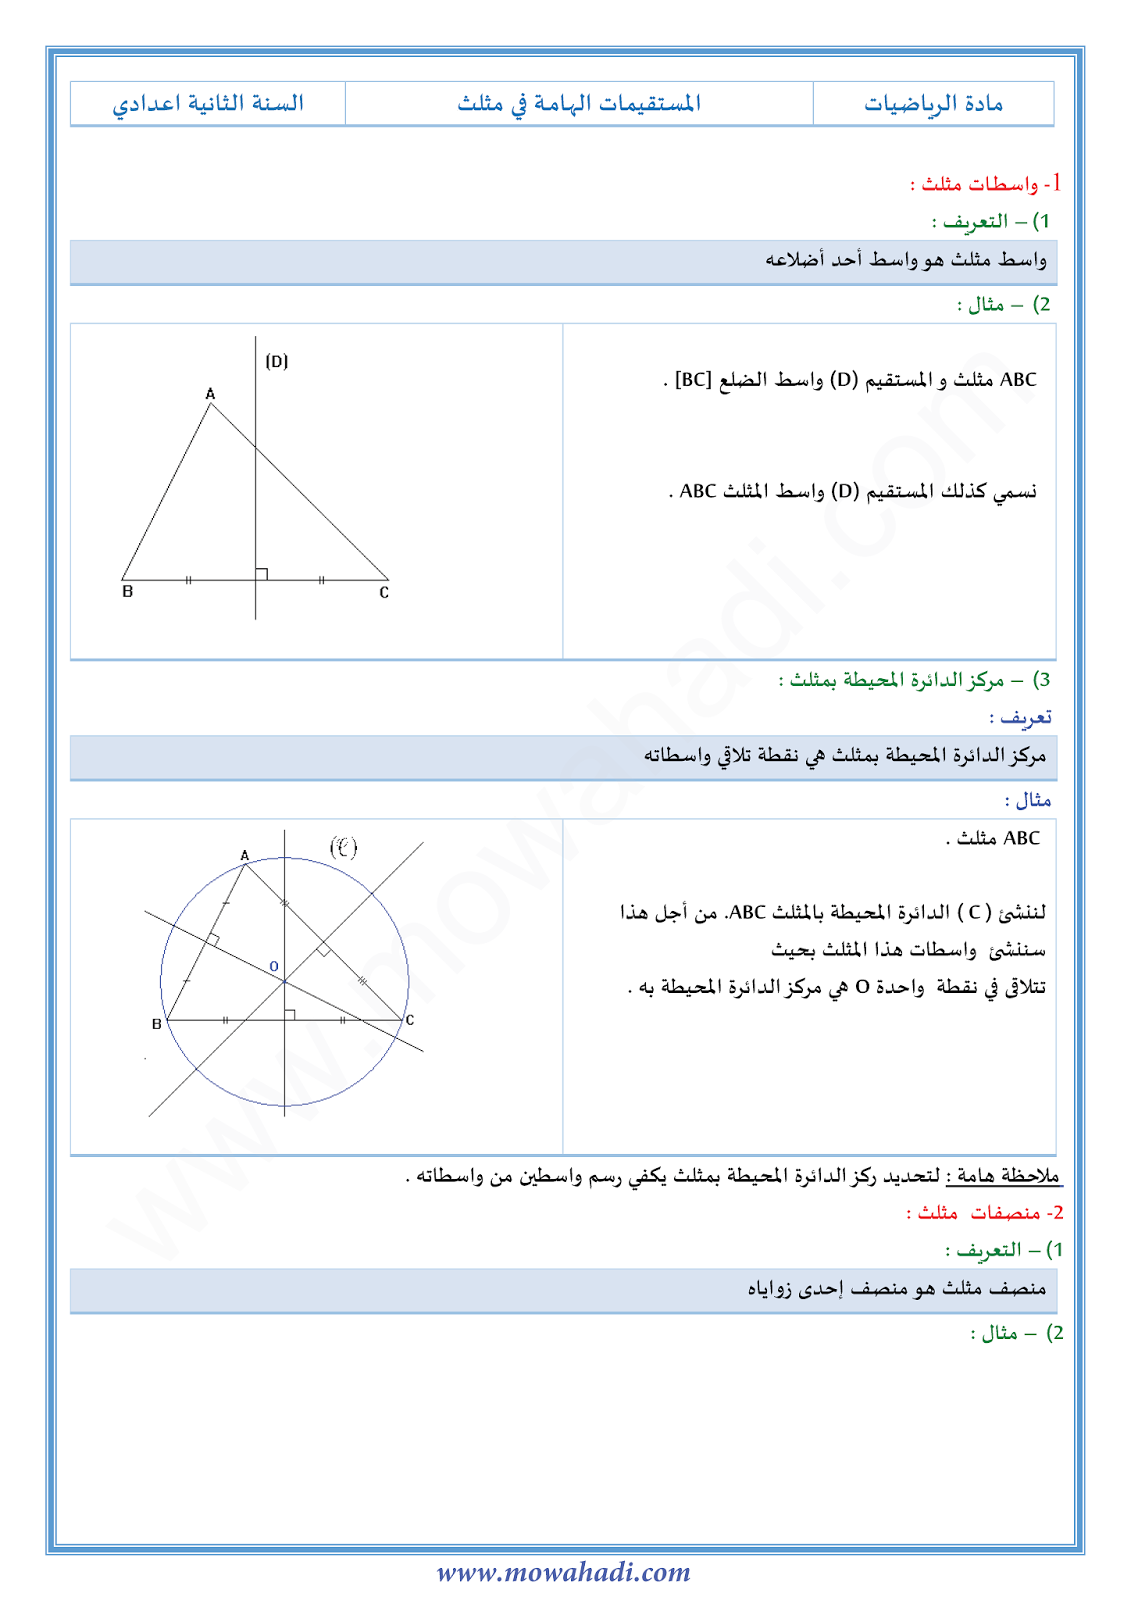 درس المستقيمات الهامة في مثلث للسنة الثانية اعدادي في مادة الرياضيات 8-cours-math2_001